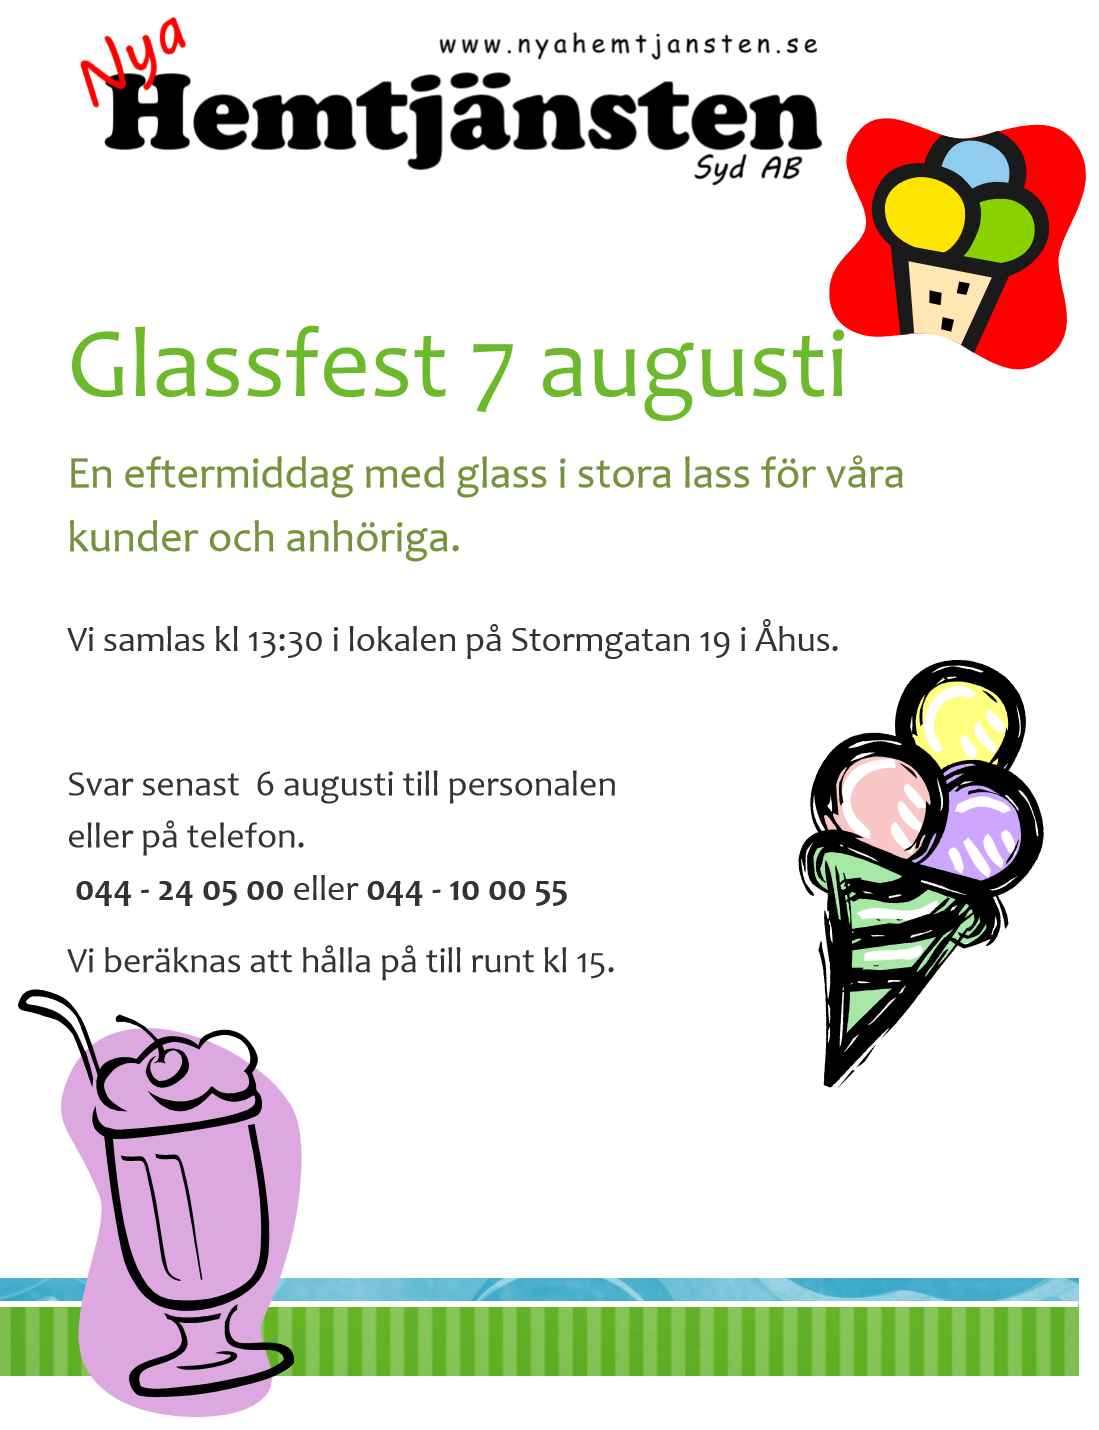 Favorit i repris! Välkomna att käka glass i stora lass. Glassen kommer från Yngsjö. 